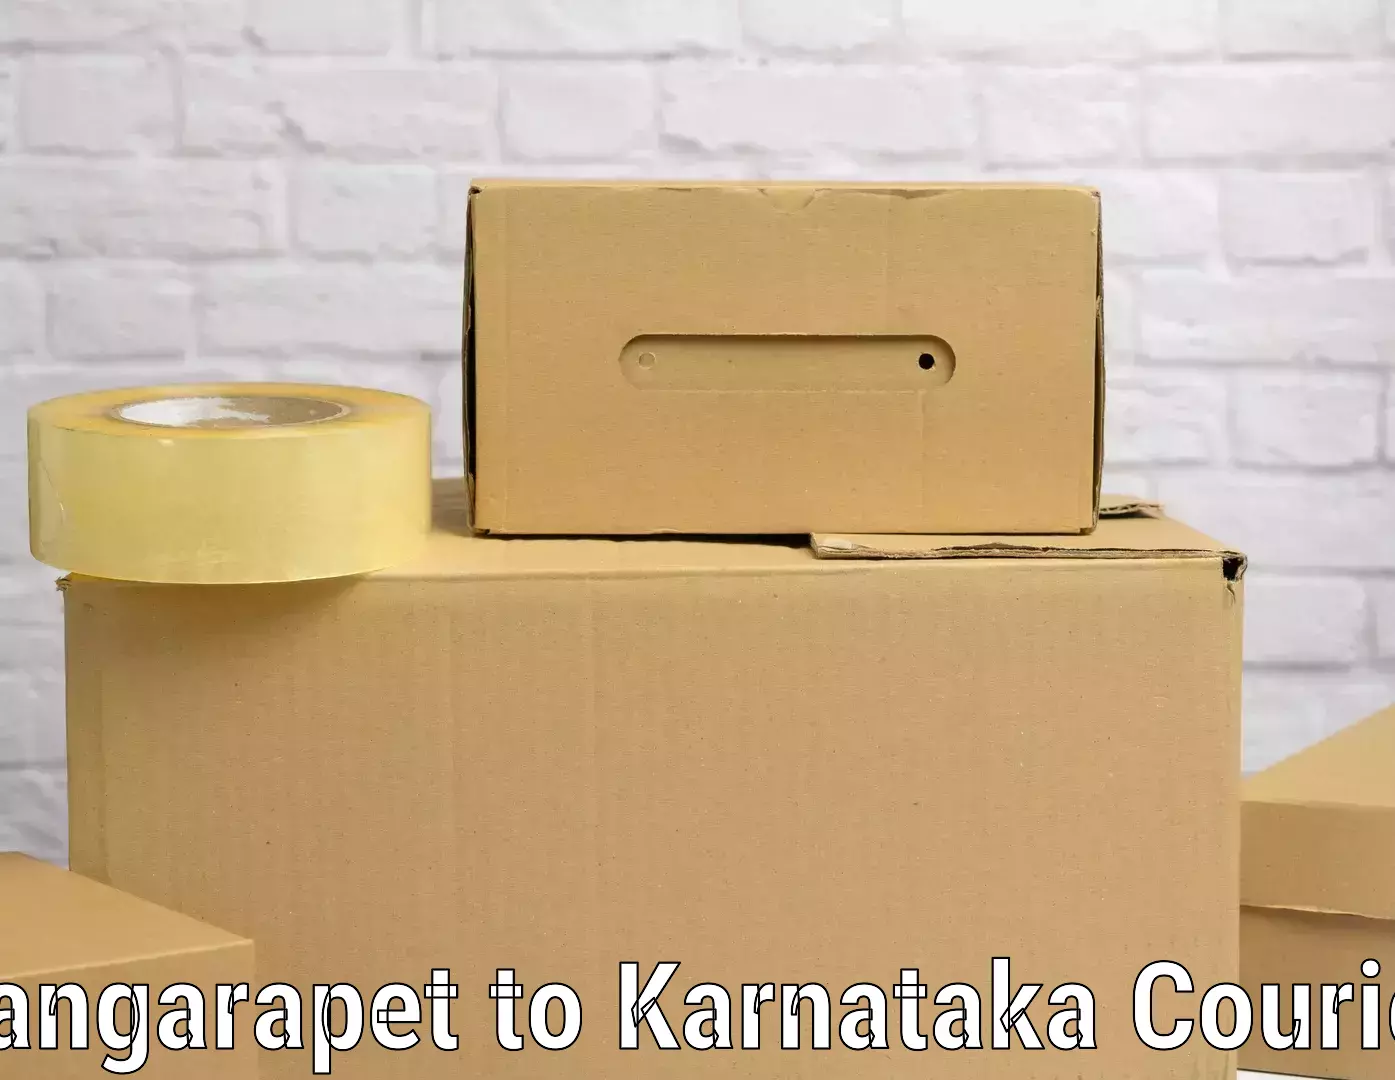 Baggage transport technology Bangarapet to Karnataka